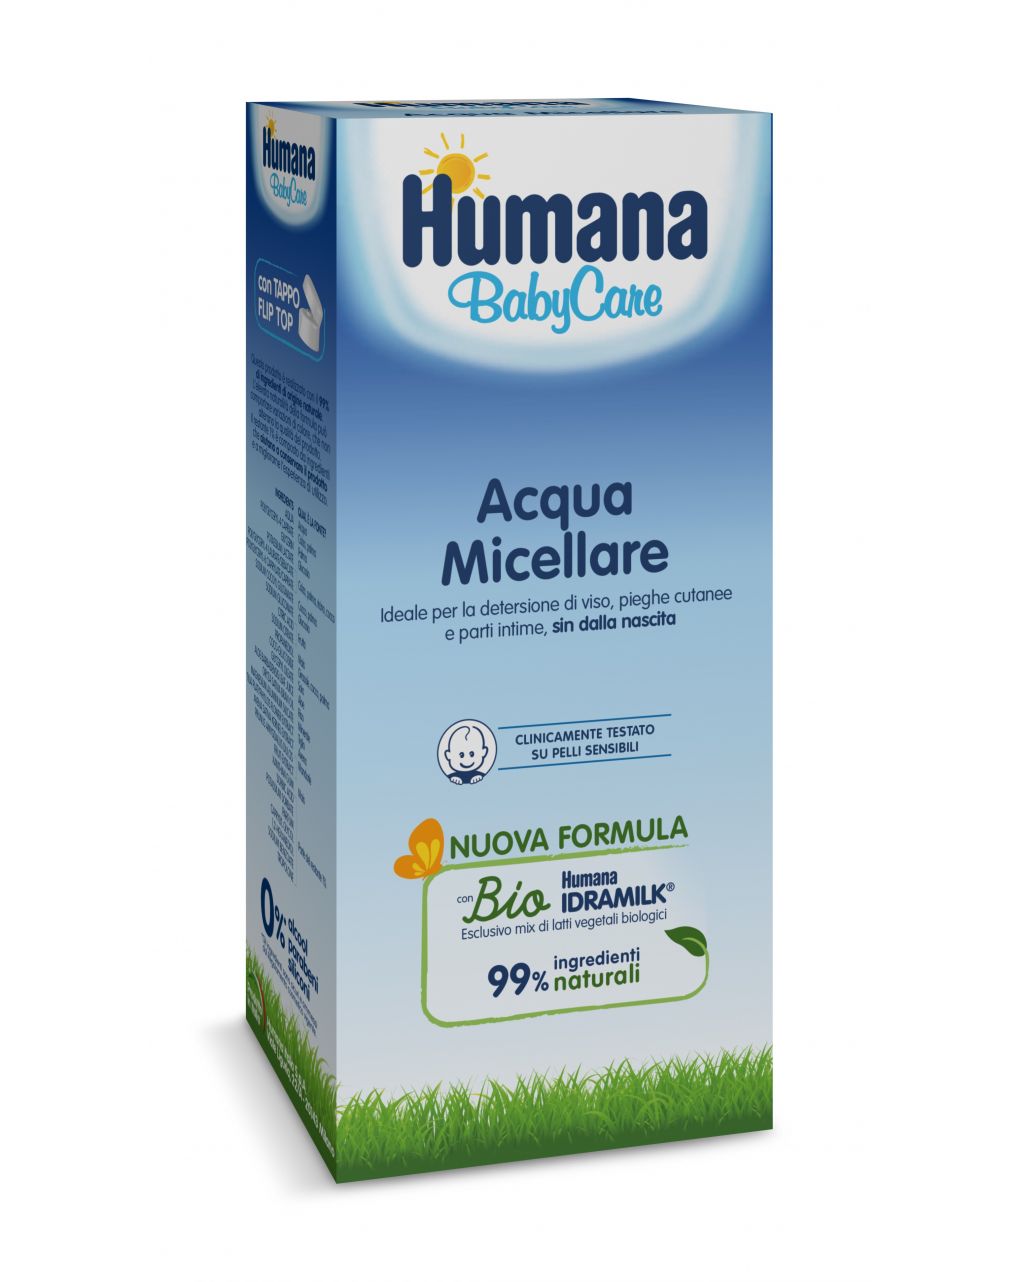 Acqua micellare 300 ml - Humana Baby